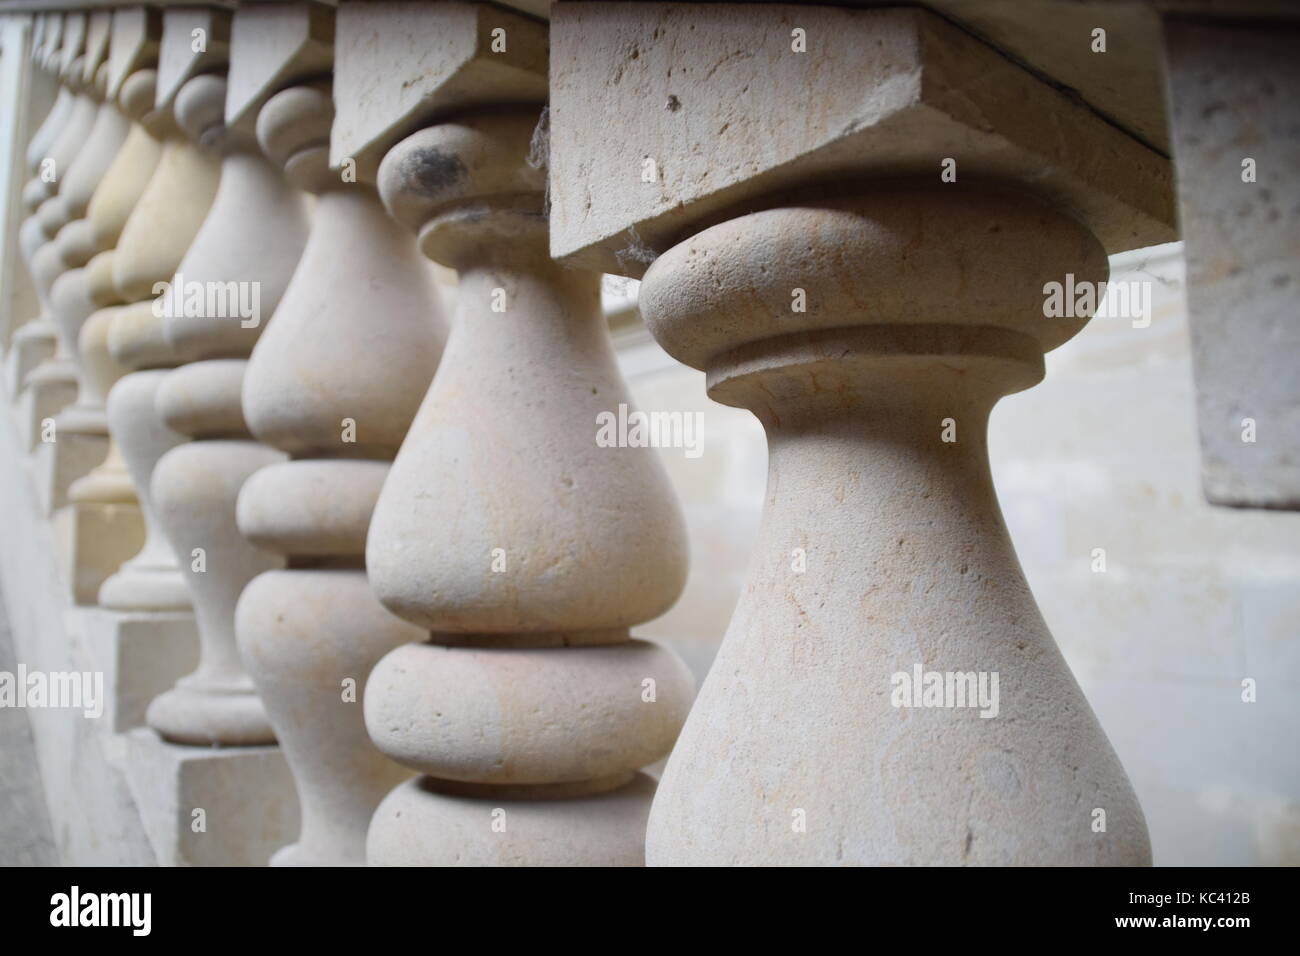 Stone balustrade - Balaustrada de piedra Stock Photo